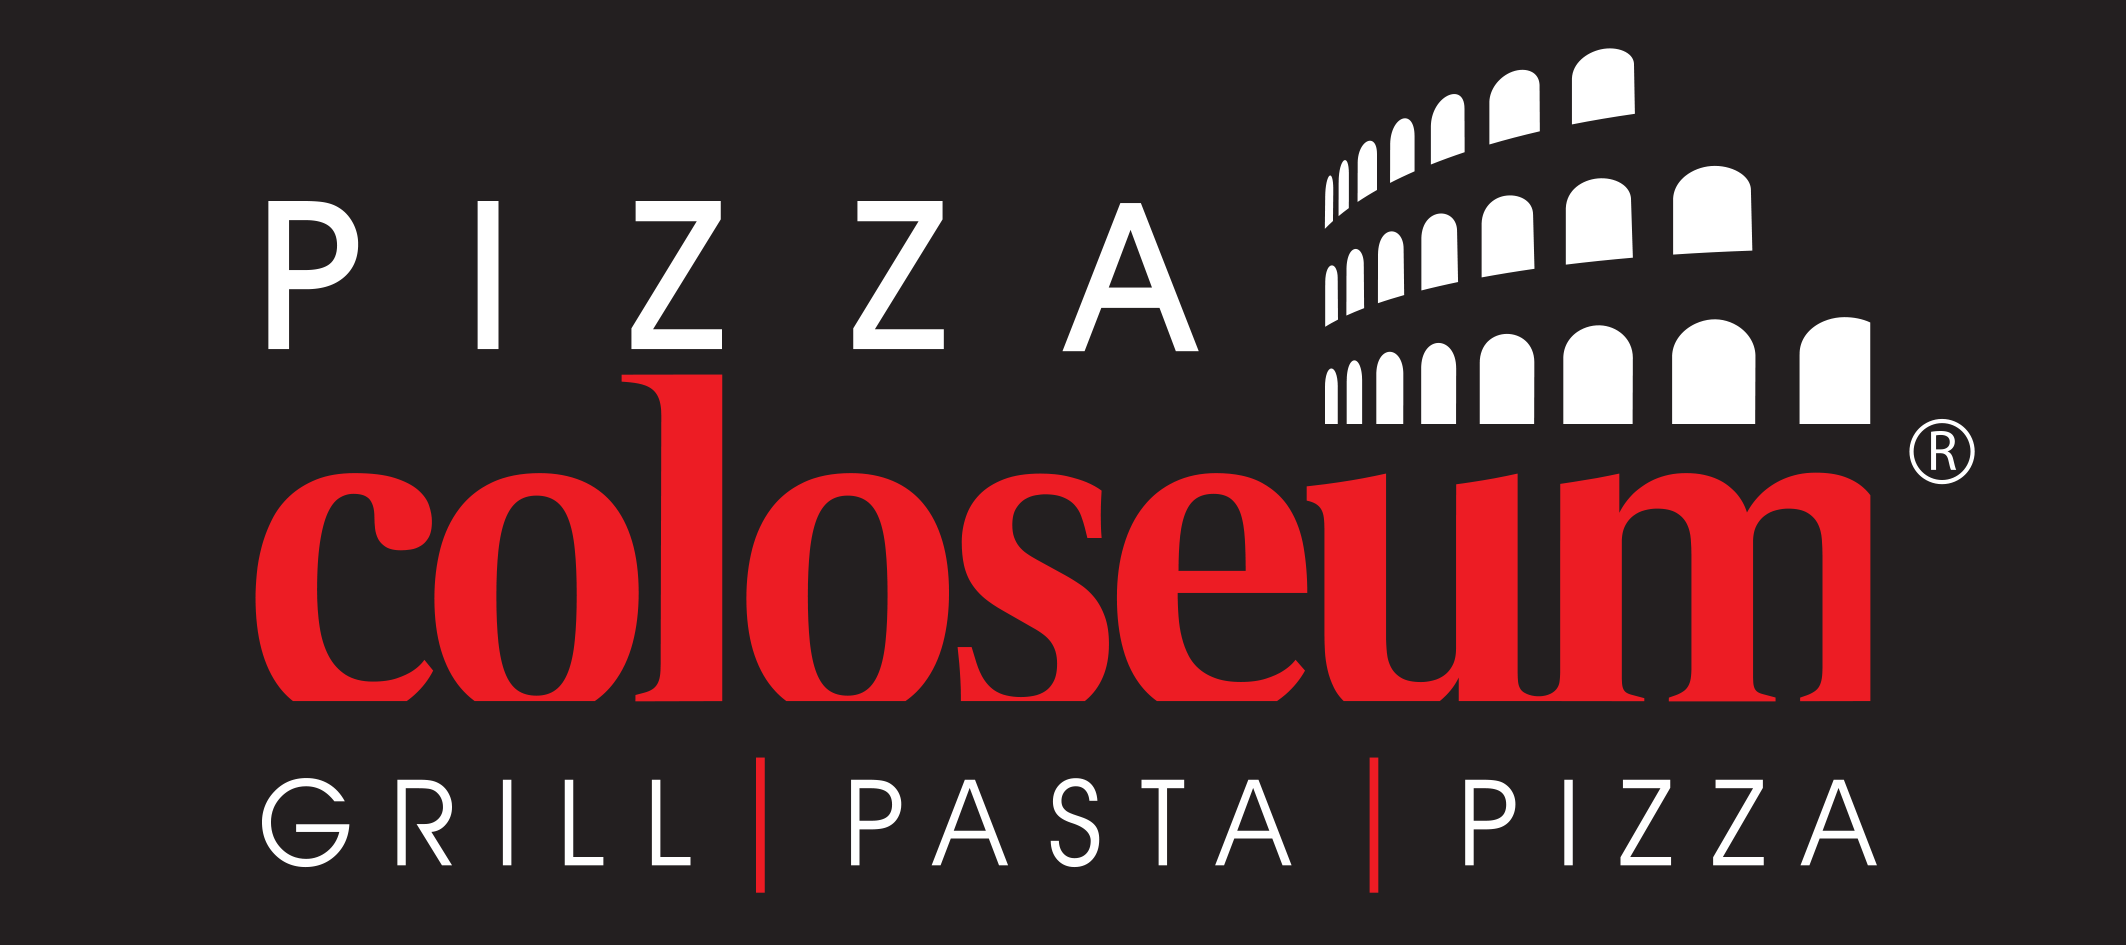 logo-pizza-coloseum